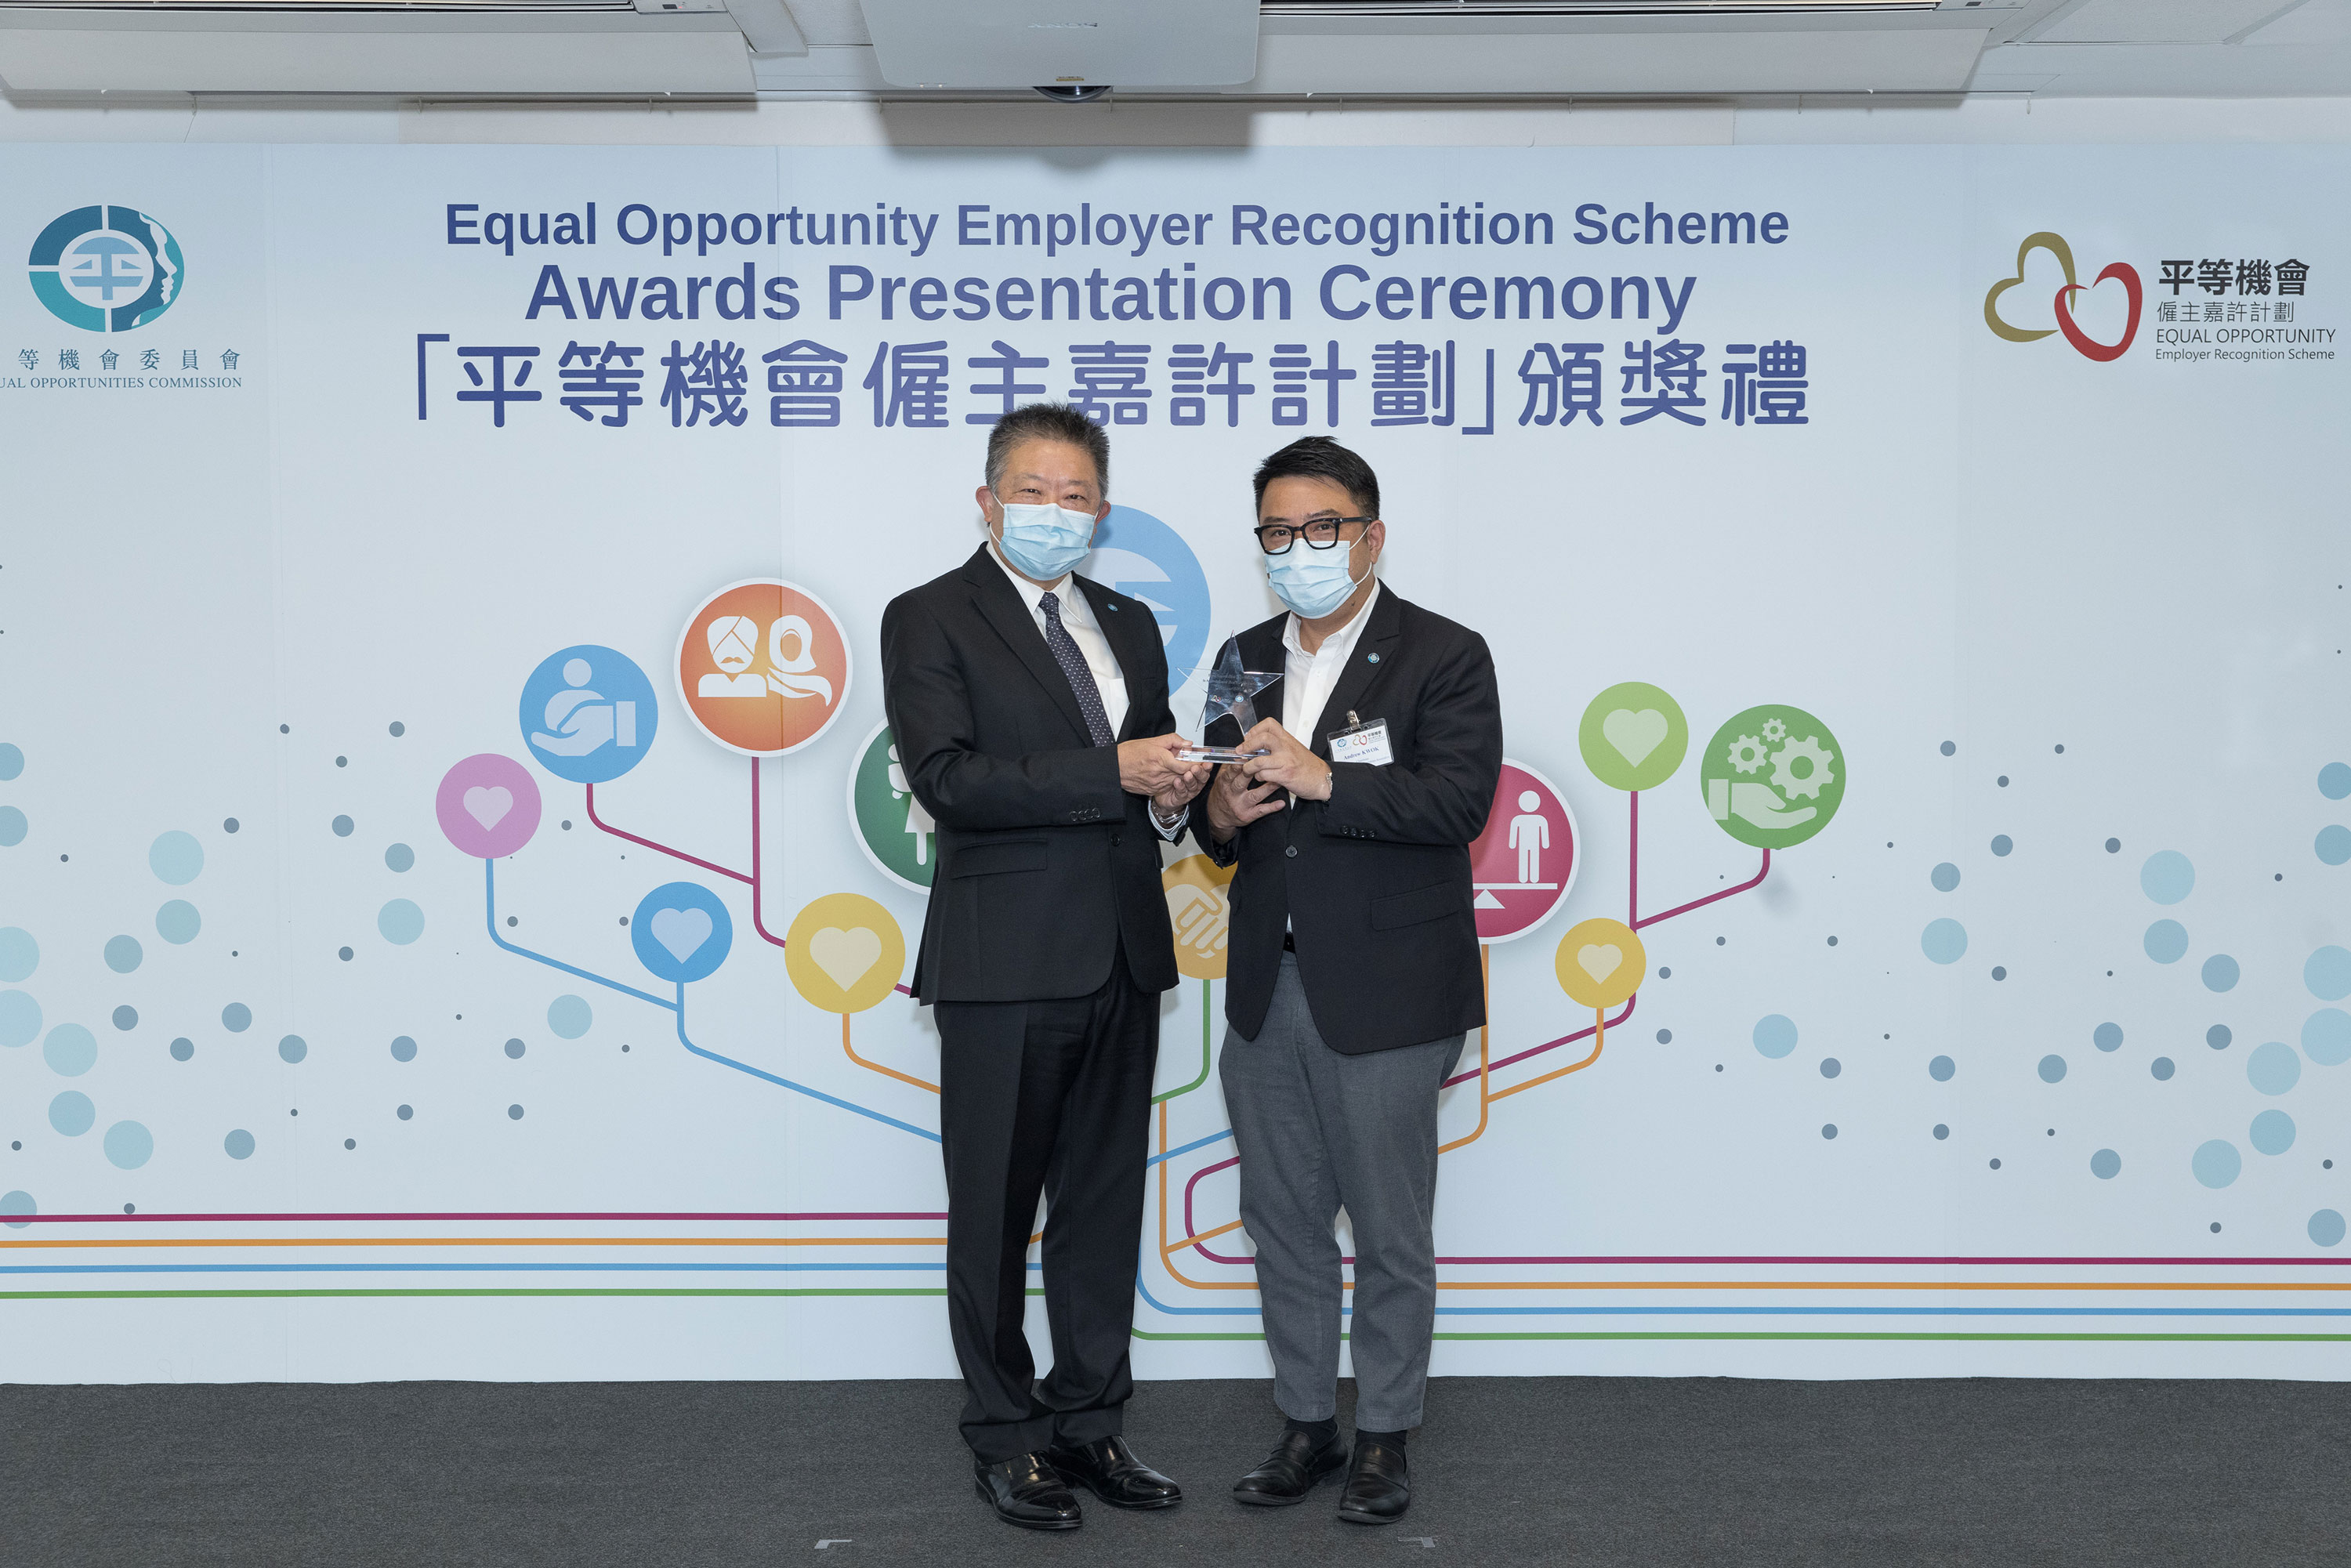 平機會主席朱敏健先生, IDS (左)頒發紀念品予出任平等機會僱主嘉許計劃評審團成員的香港中小型企業聯合會主席郭志華先生(右)。